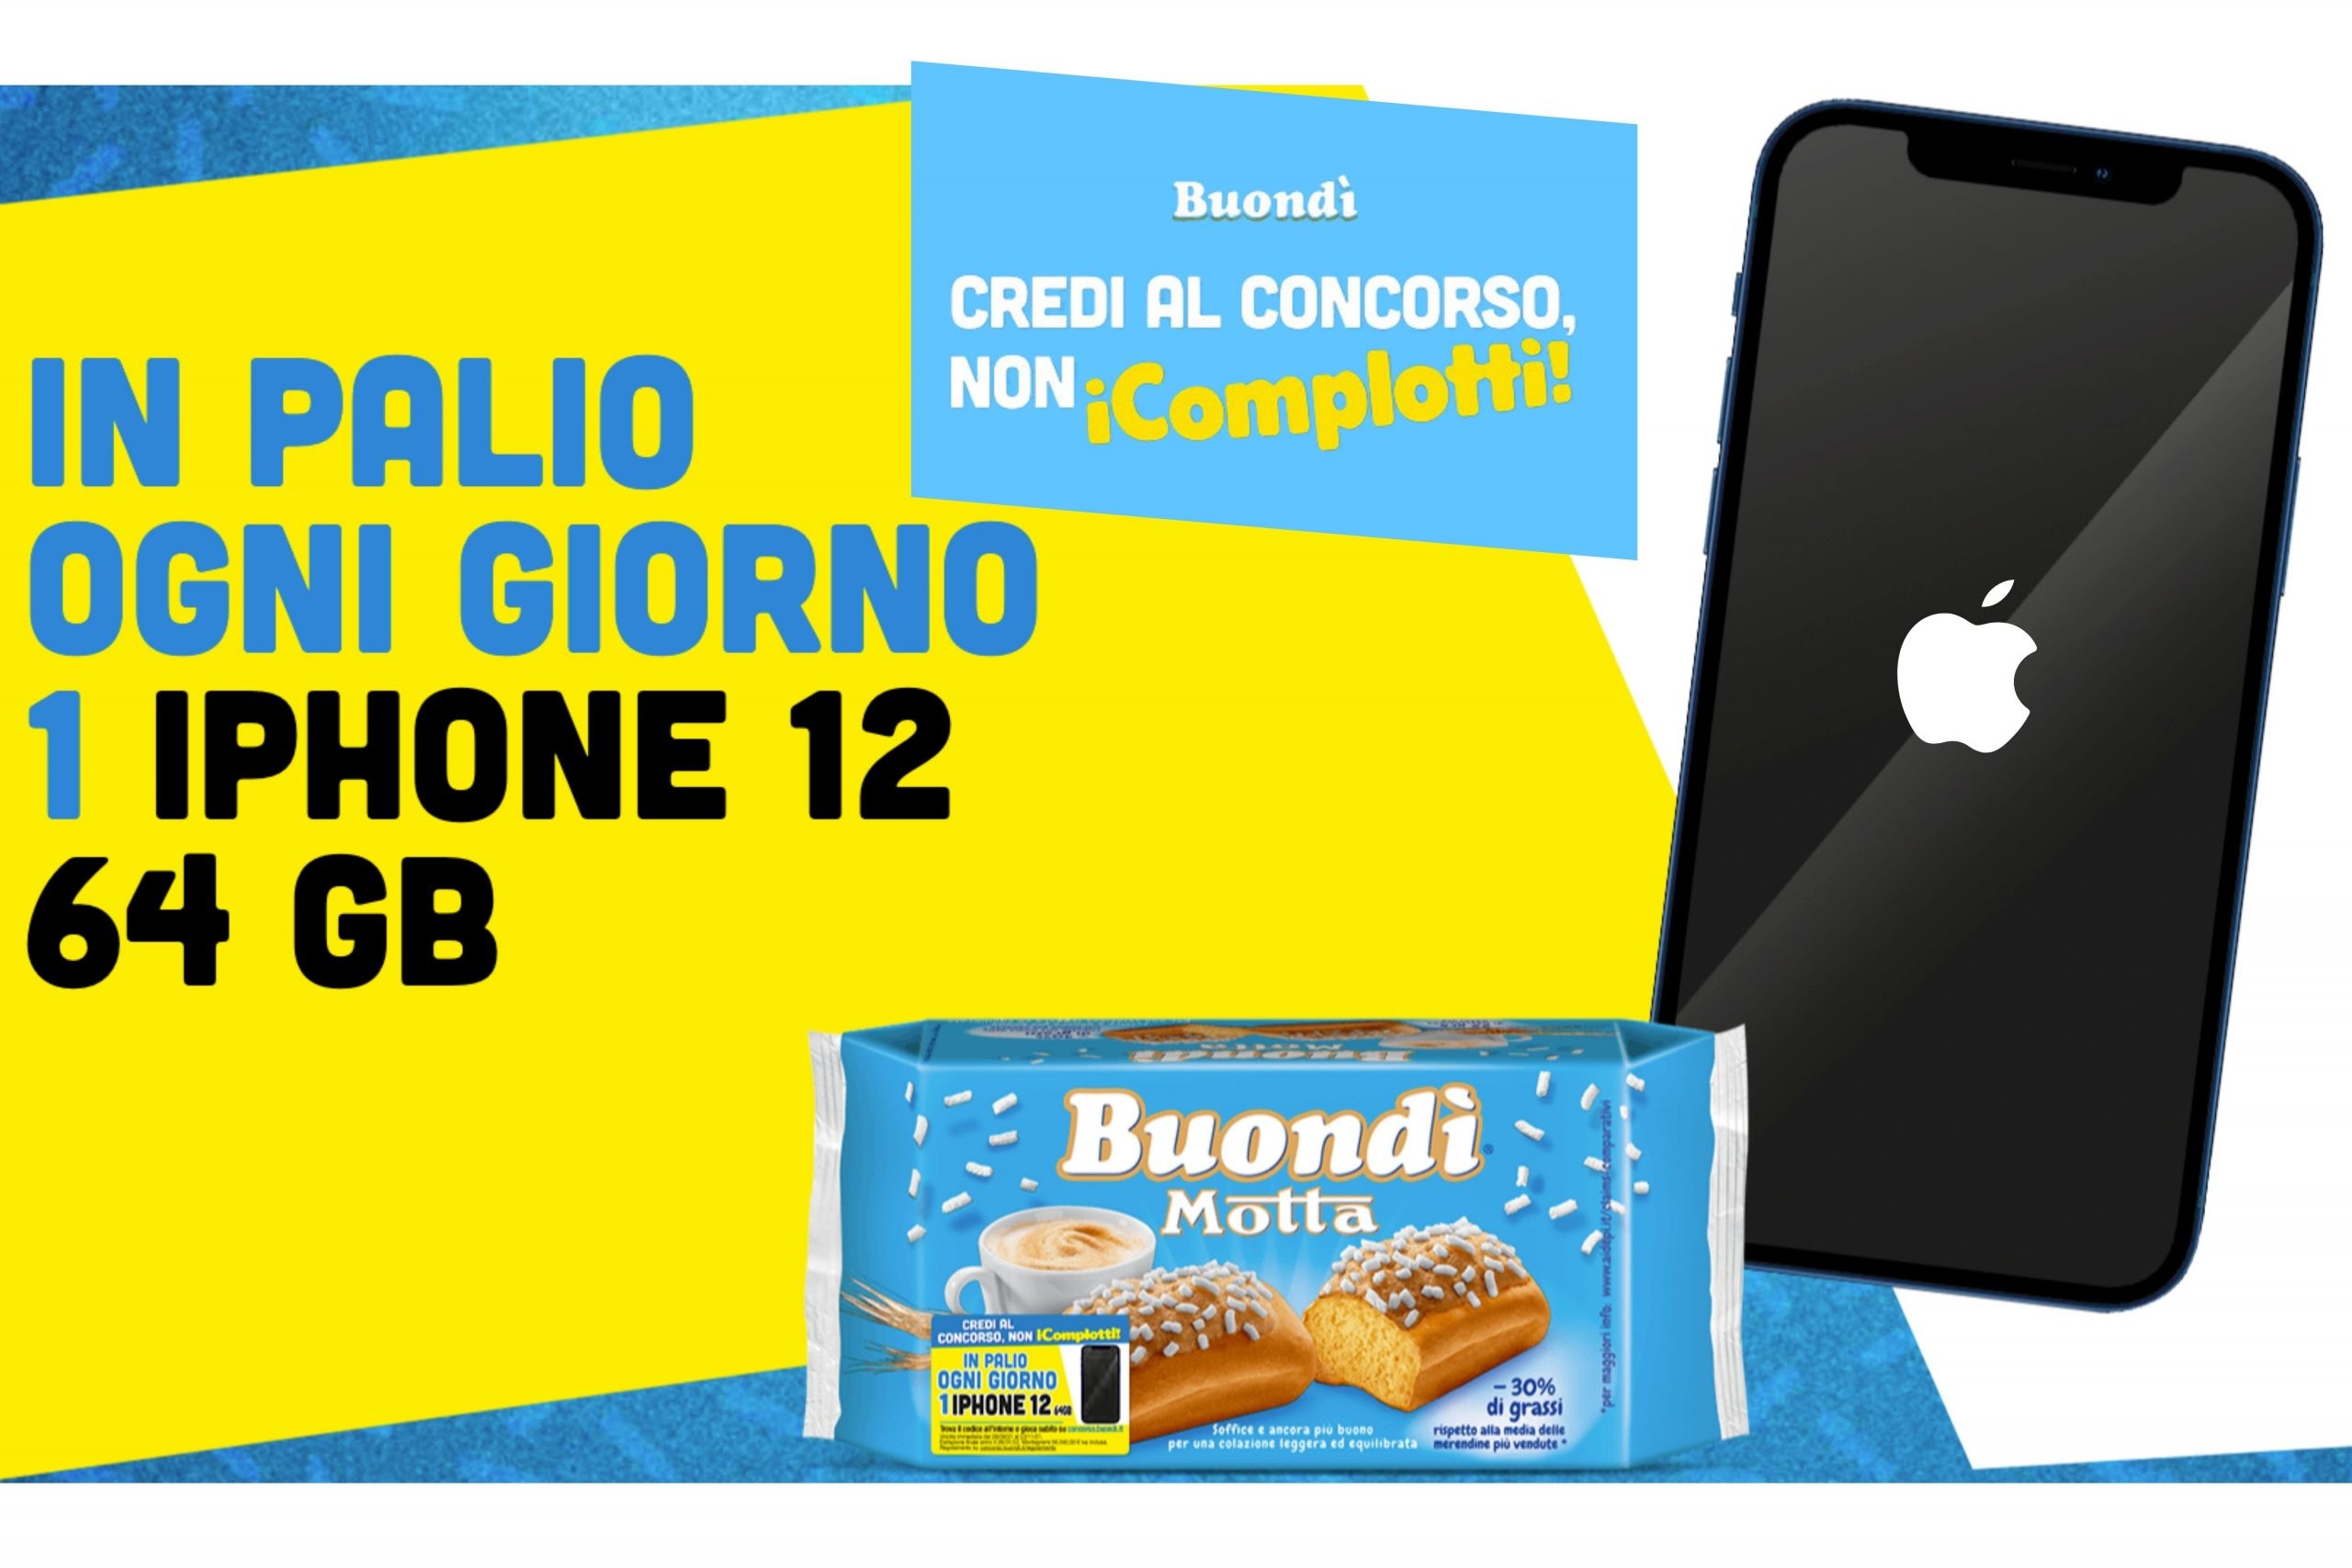 “Credi al Concorso, non iComplotti”: con Buondì puoi vincere GRATIS un iPhone 12 64GB ogni giorno!